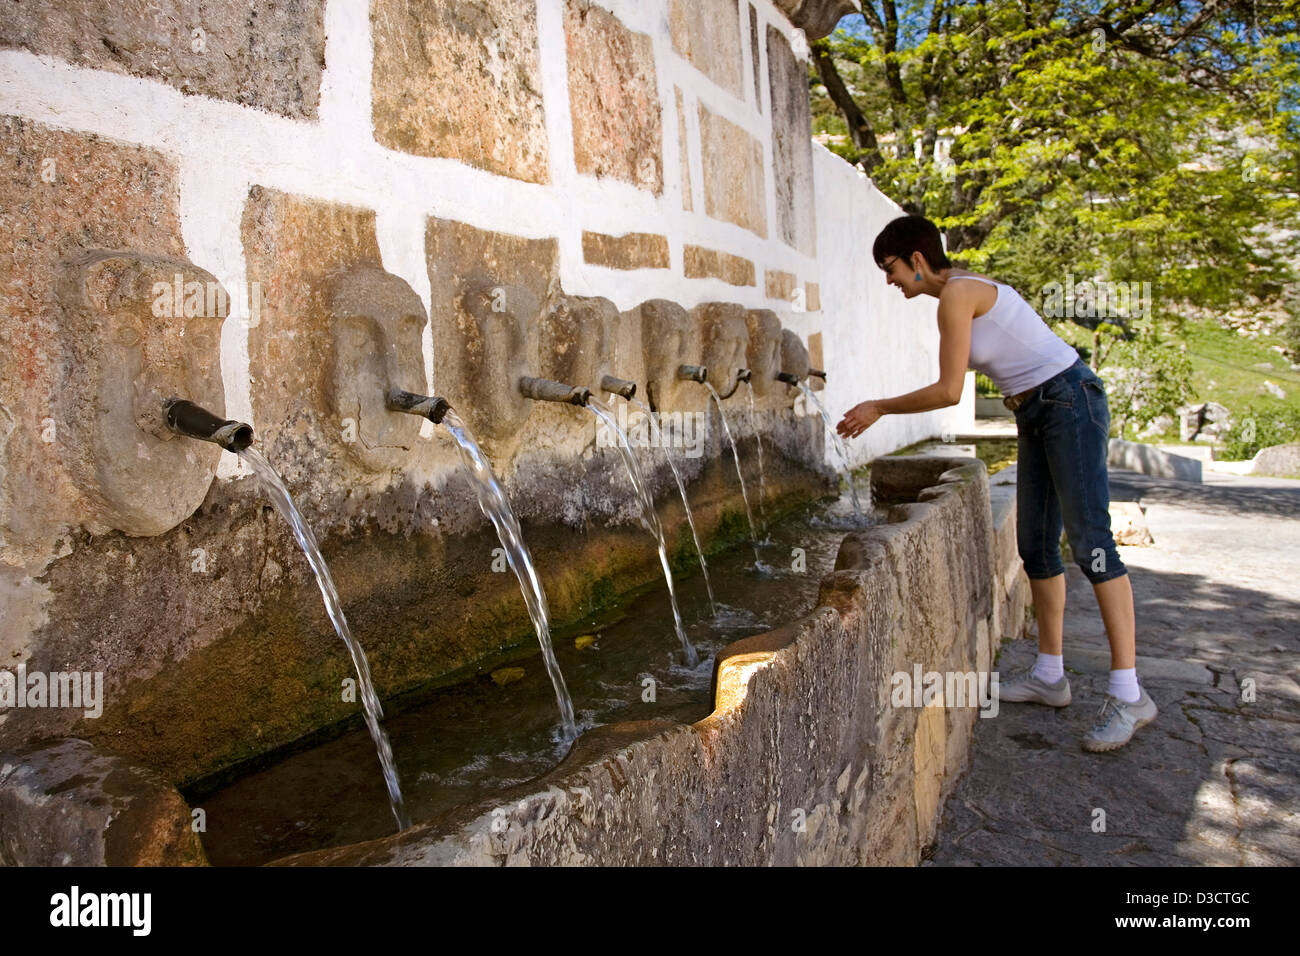 Fontaine d'eau des villages blancs Grazalema sierra de cadiz, andalousie espagne Banque D'Images